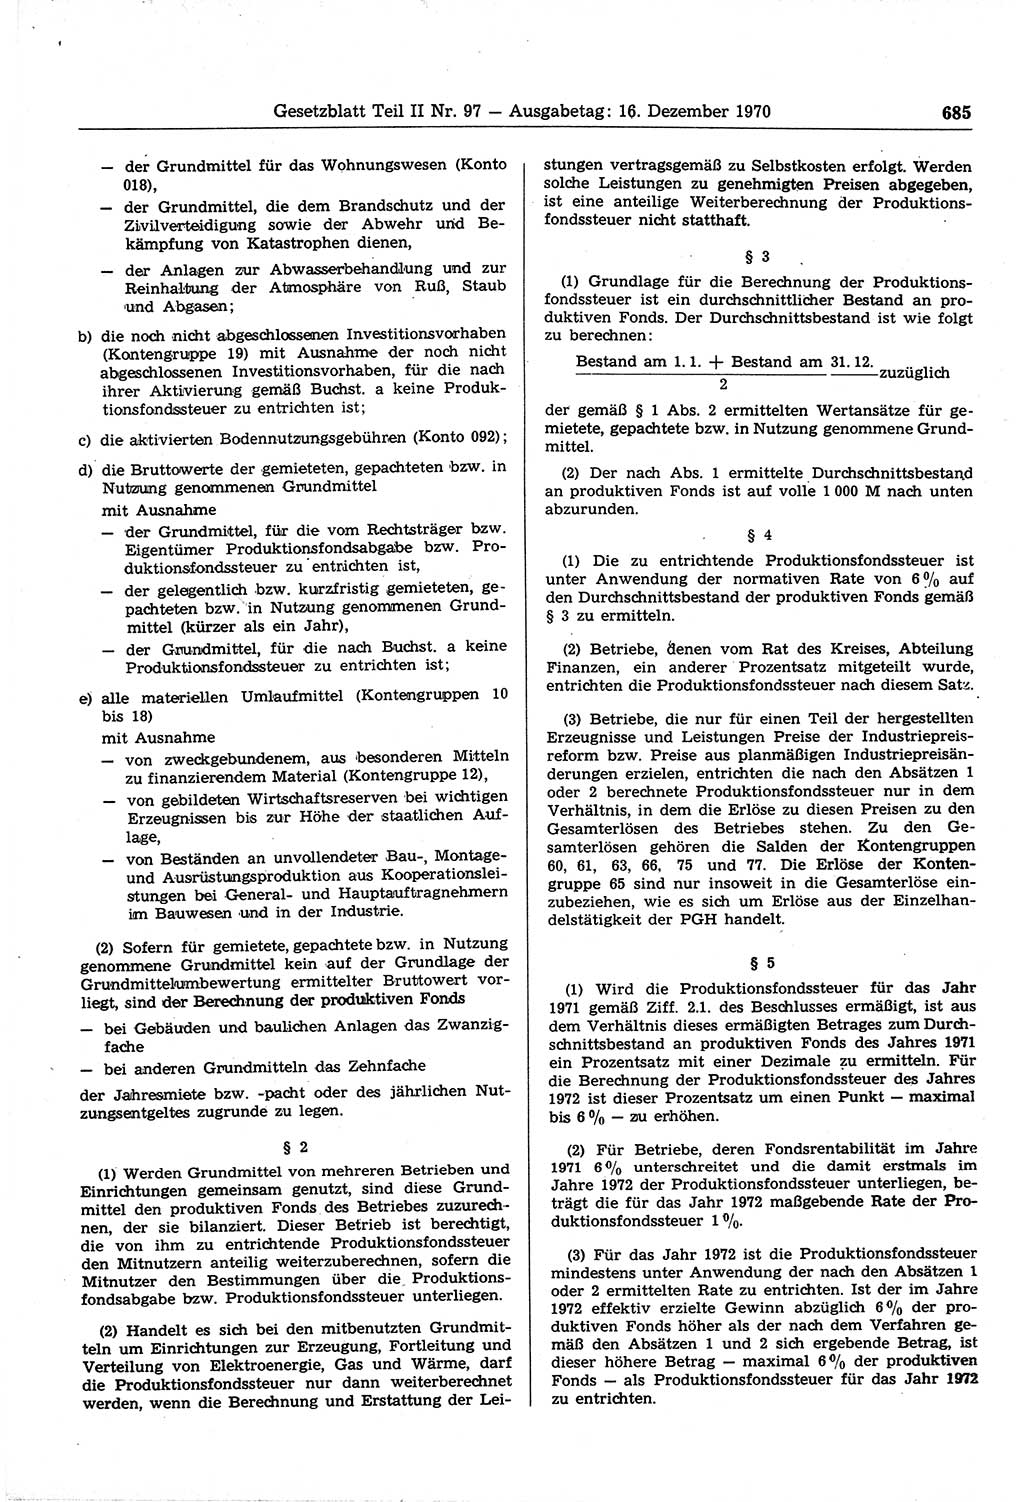 Gesetzblatt (GBl.) der Deutschen Demokratischen Republik (DDR) Teil ⅠⅠ 1970, Seite 685 (GBl. DDR ⅠⅠ 1970, S. 685)